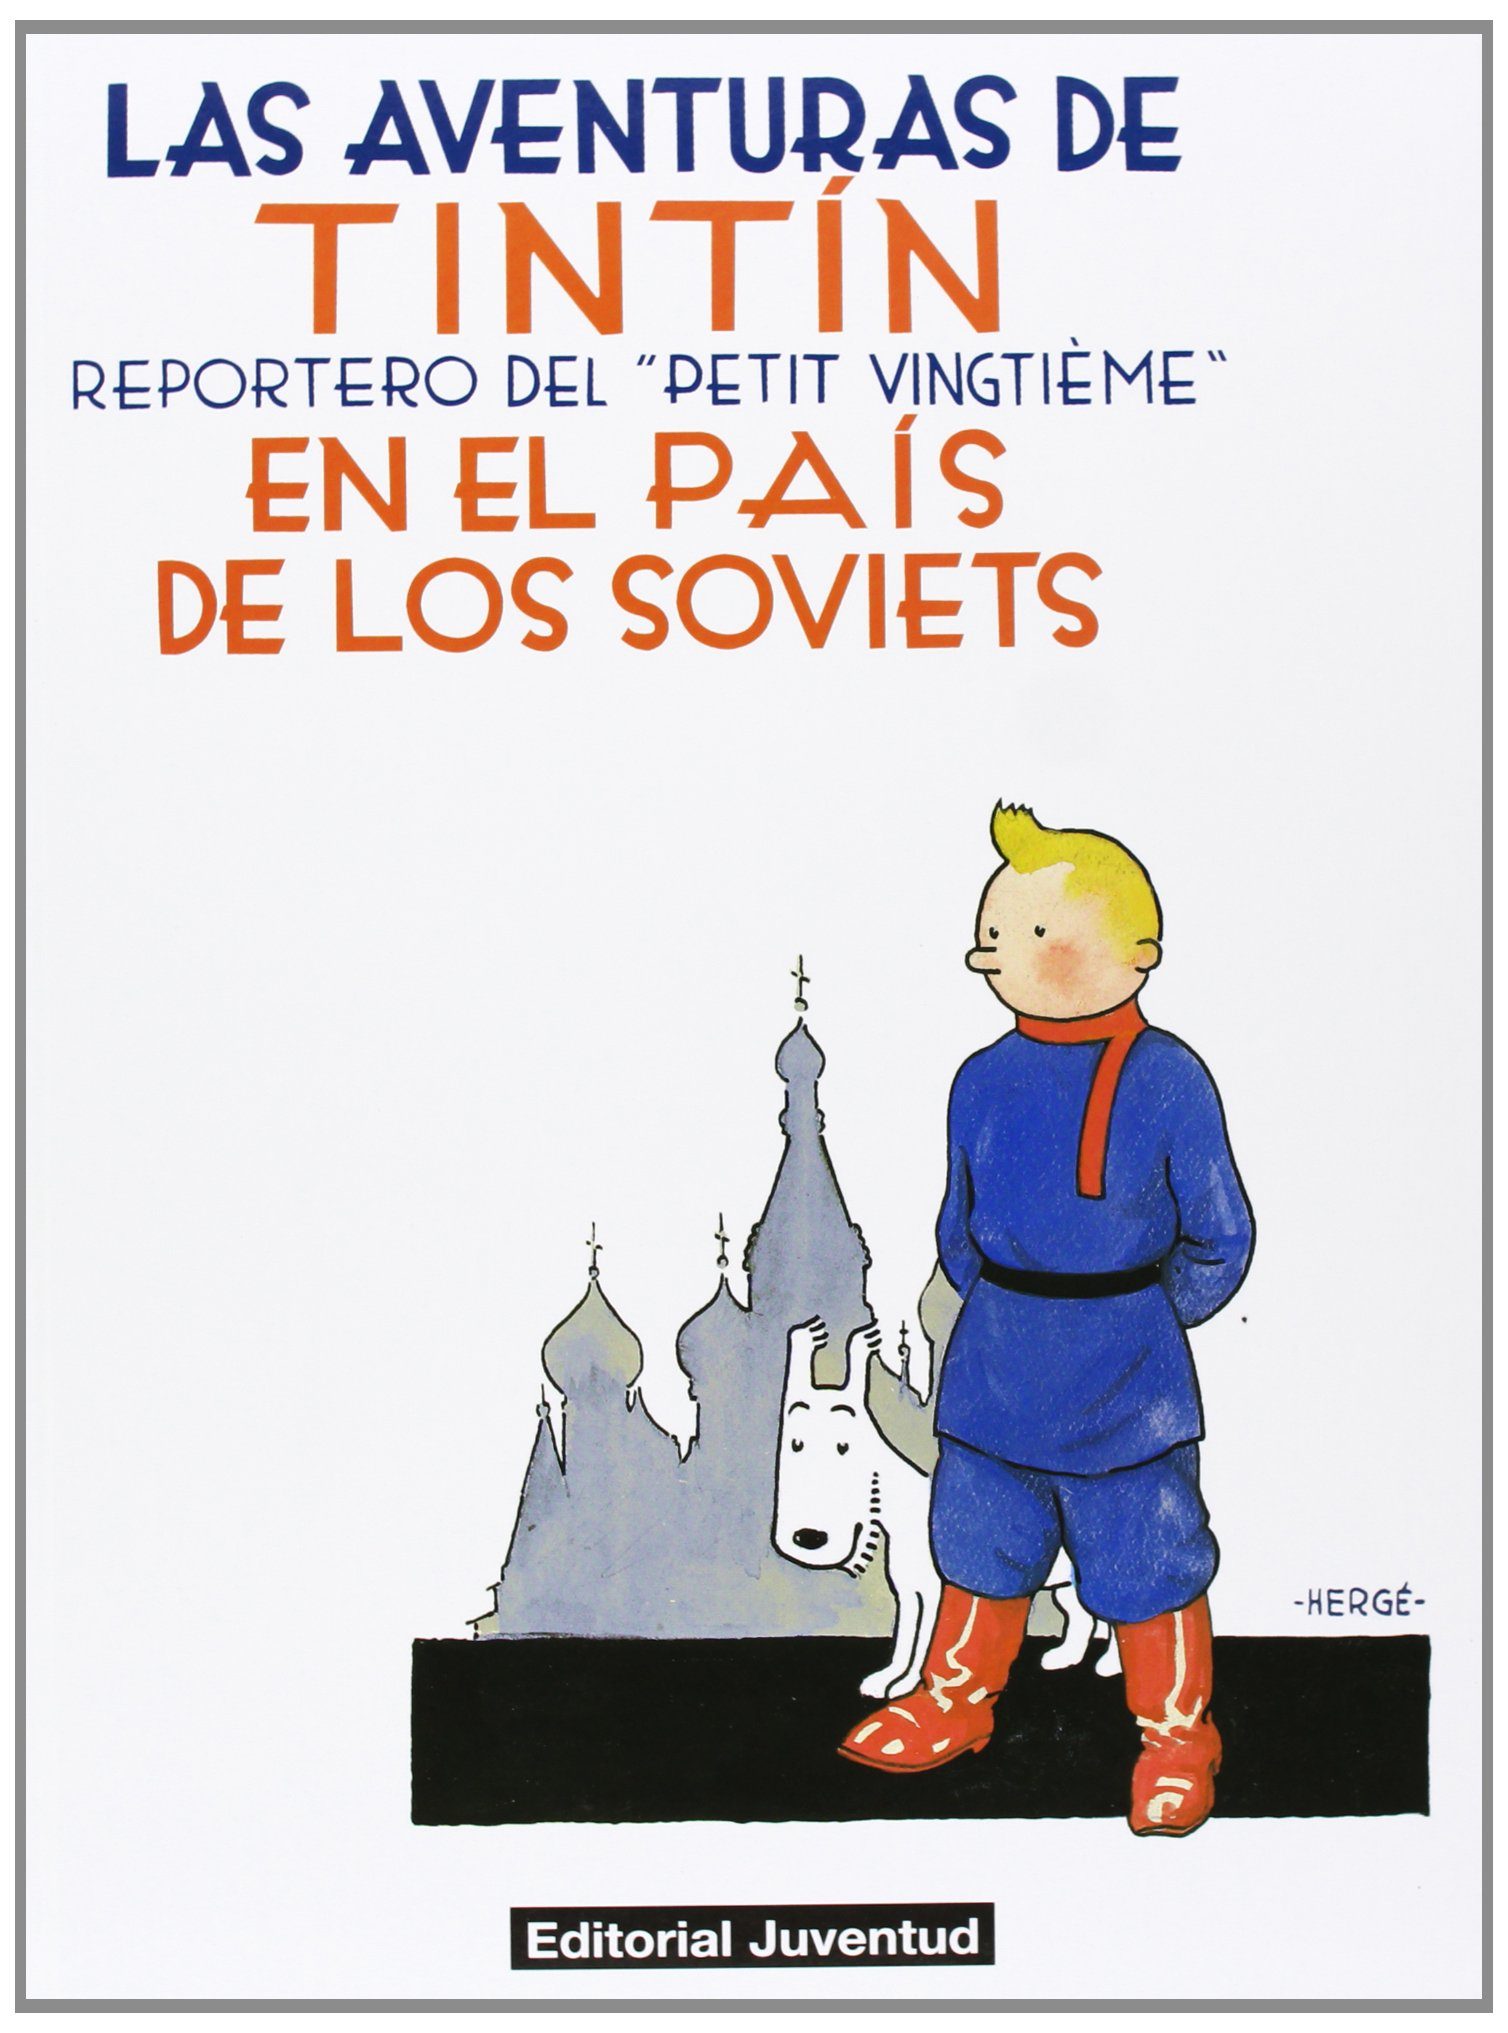 "Tintín en el país de los soviets"